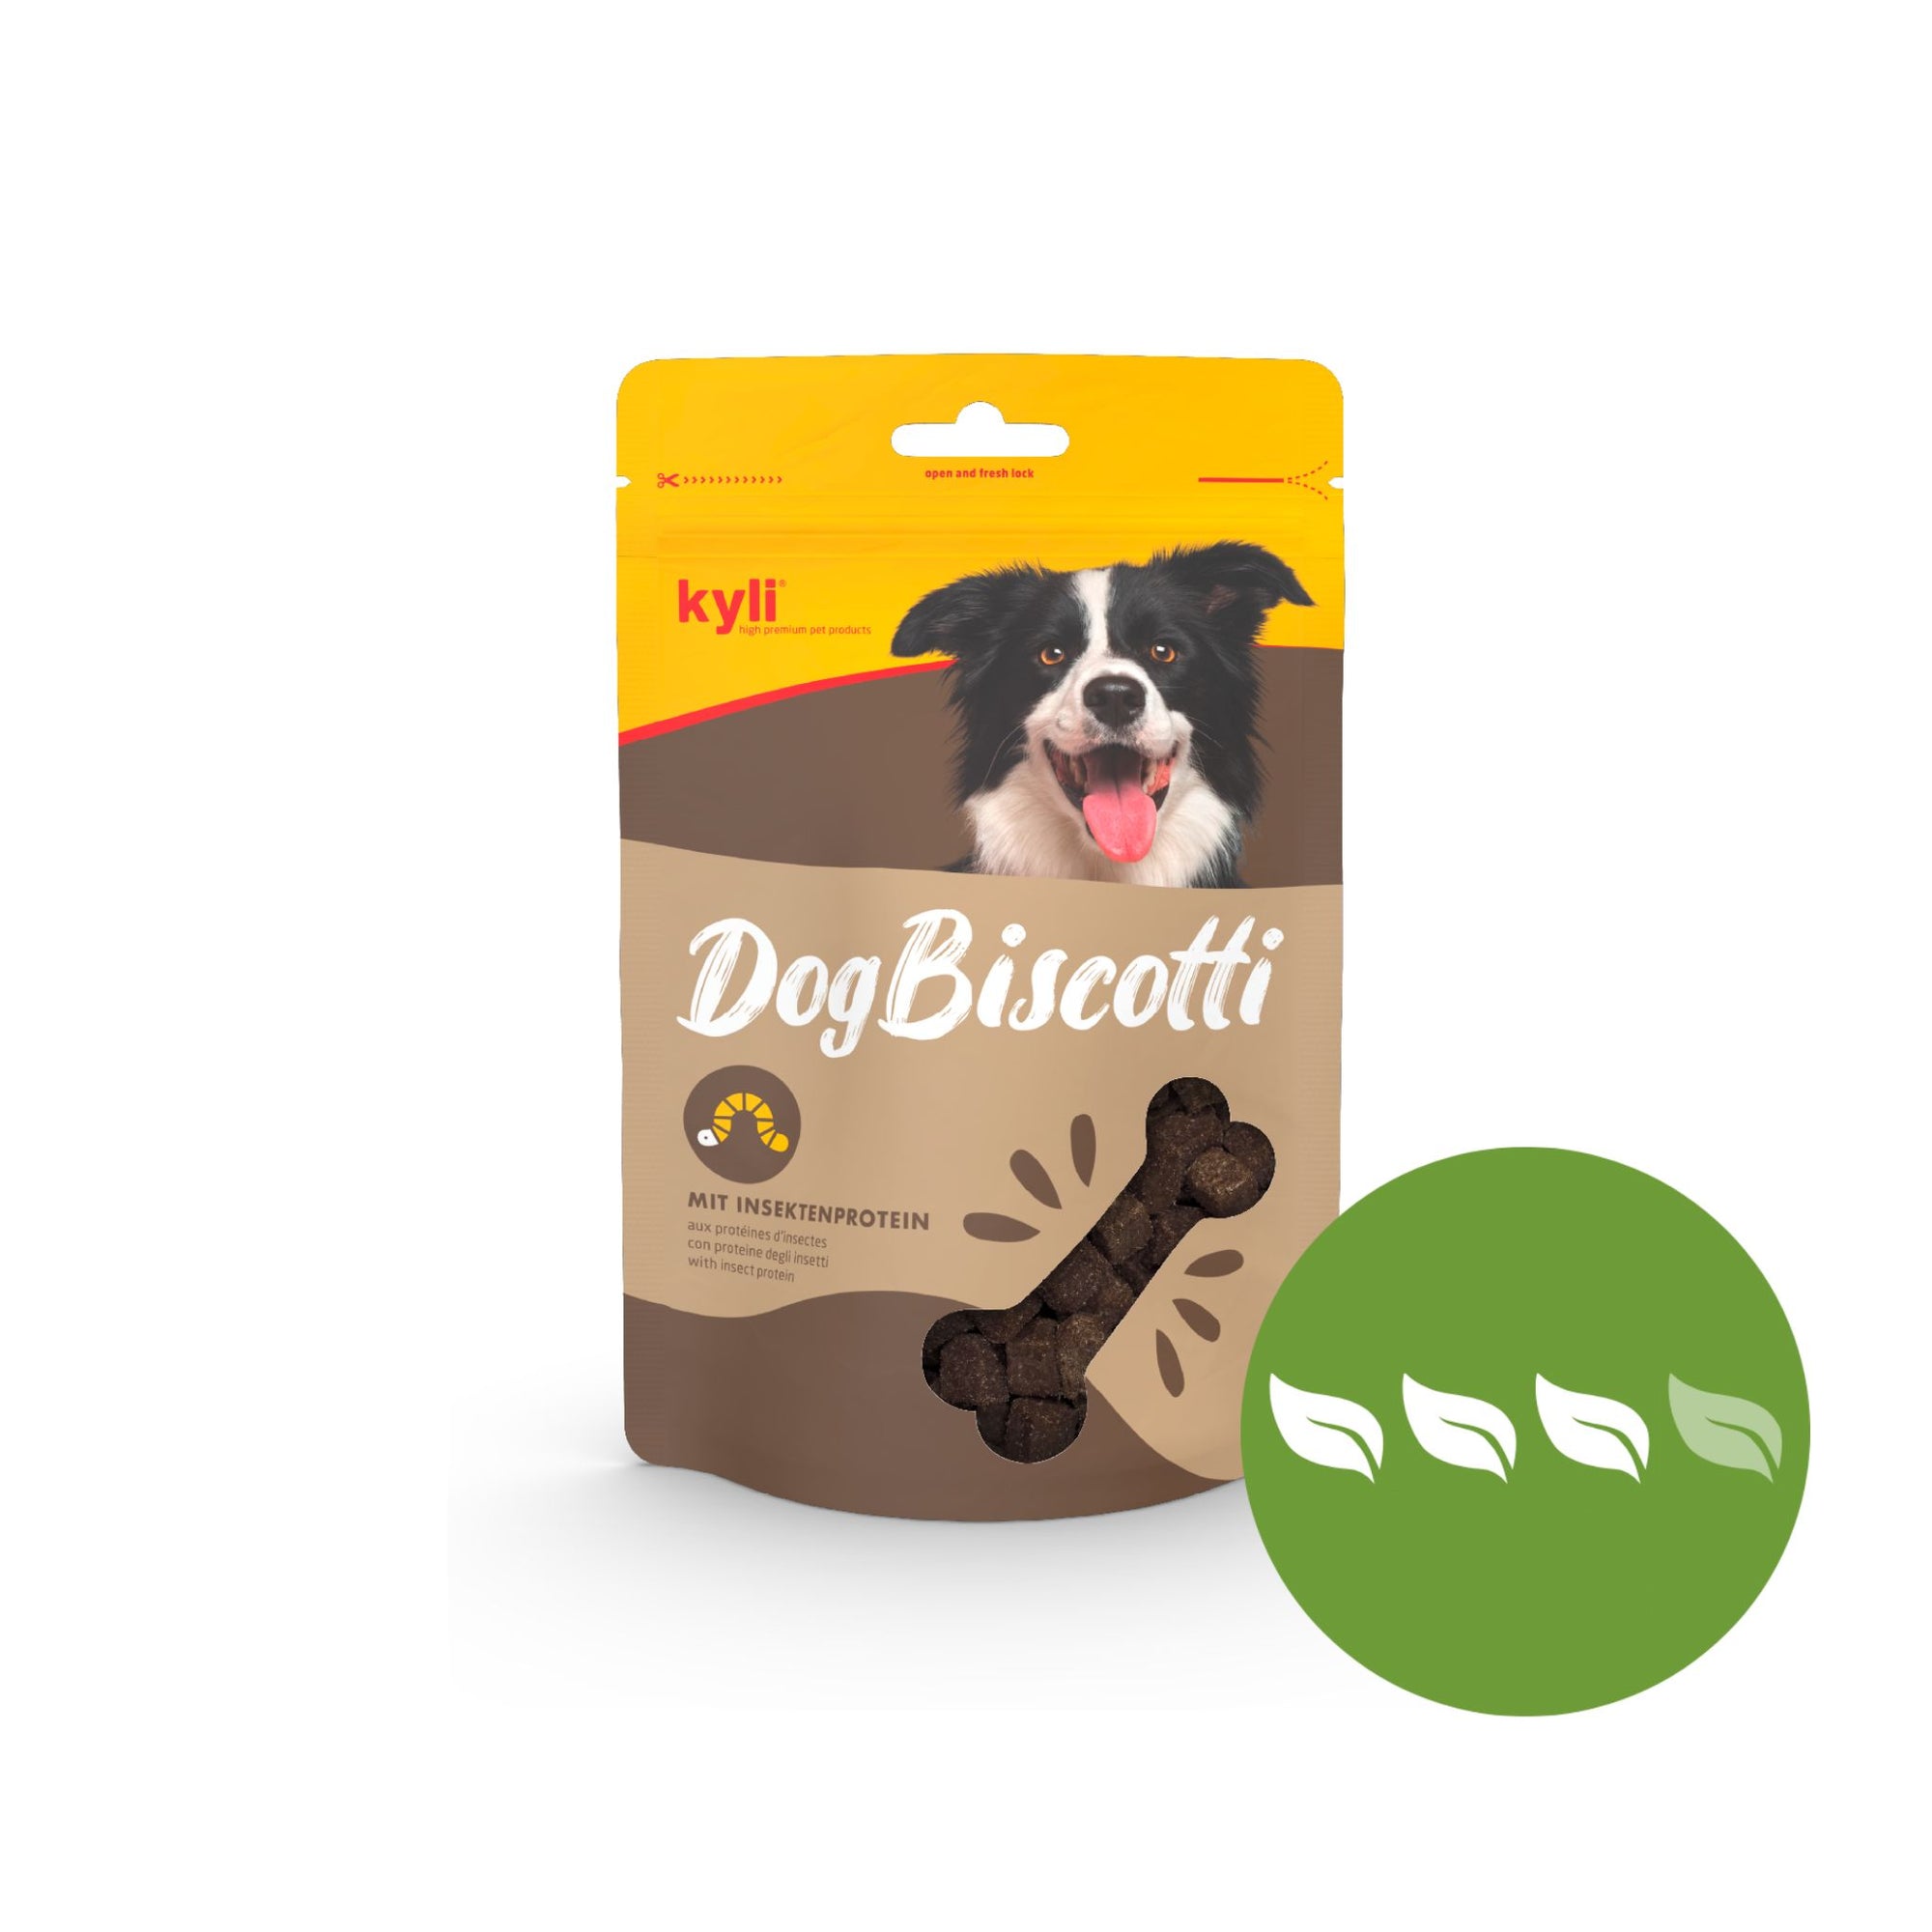 Artikel mit dem Namen kyli DogBiscotti mit Insektenprotein im Shop von zoo.de , dem Onlineshop für nachhaltiges Hundefutter und Katzenfutter.